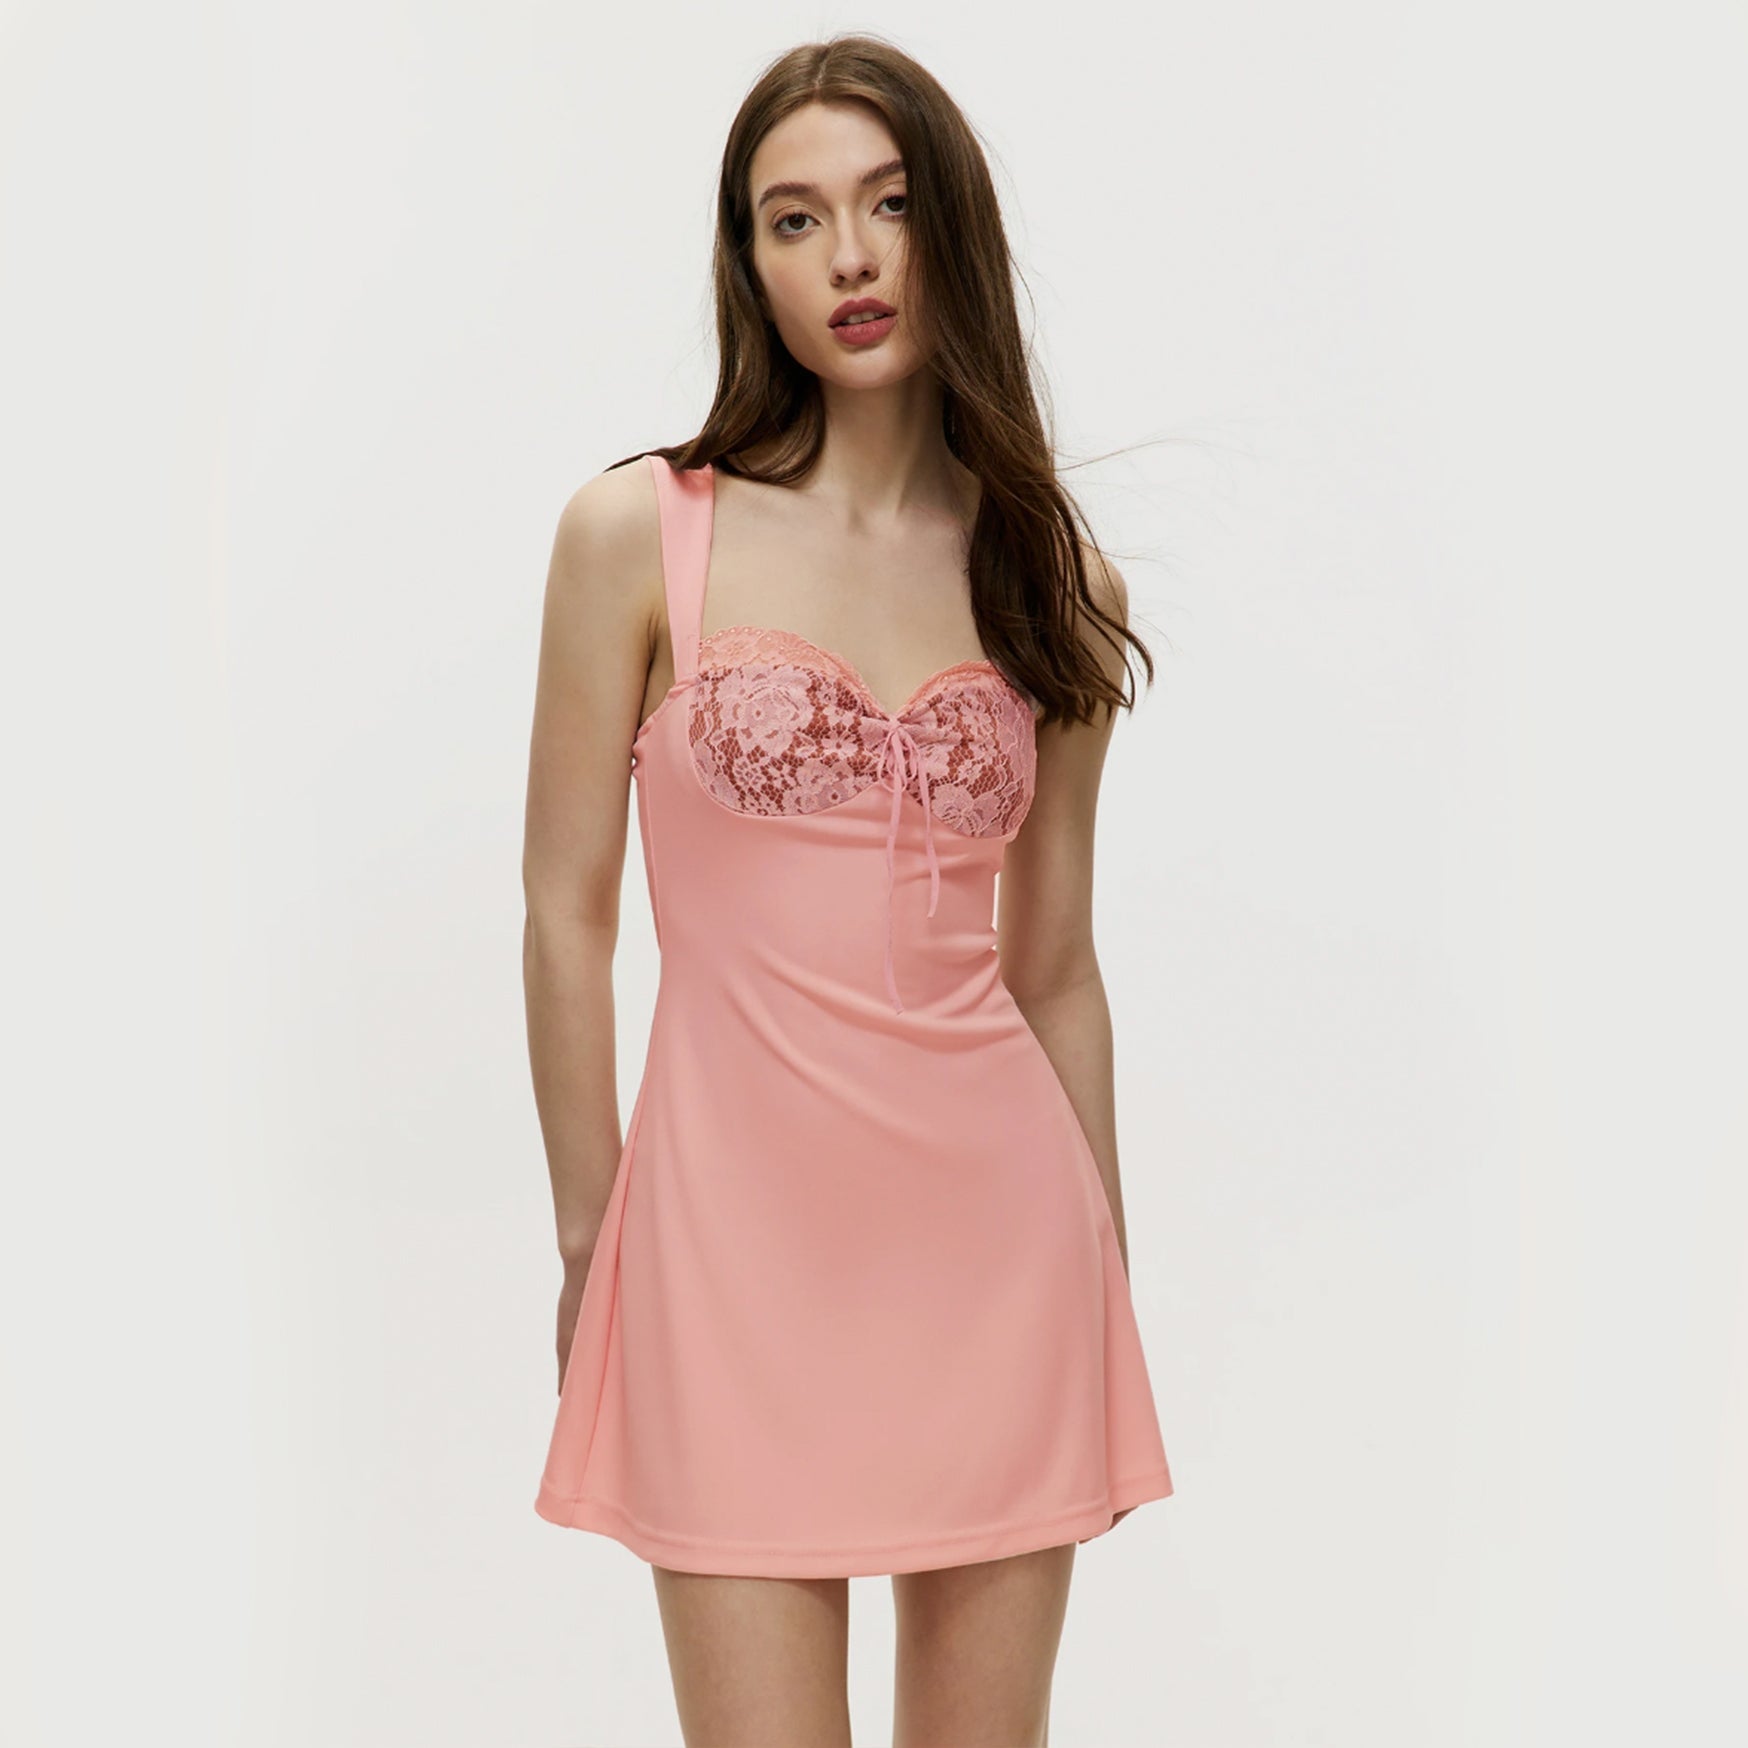 Patchwork Short Dress - Light Pink S